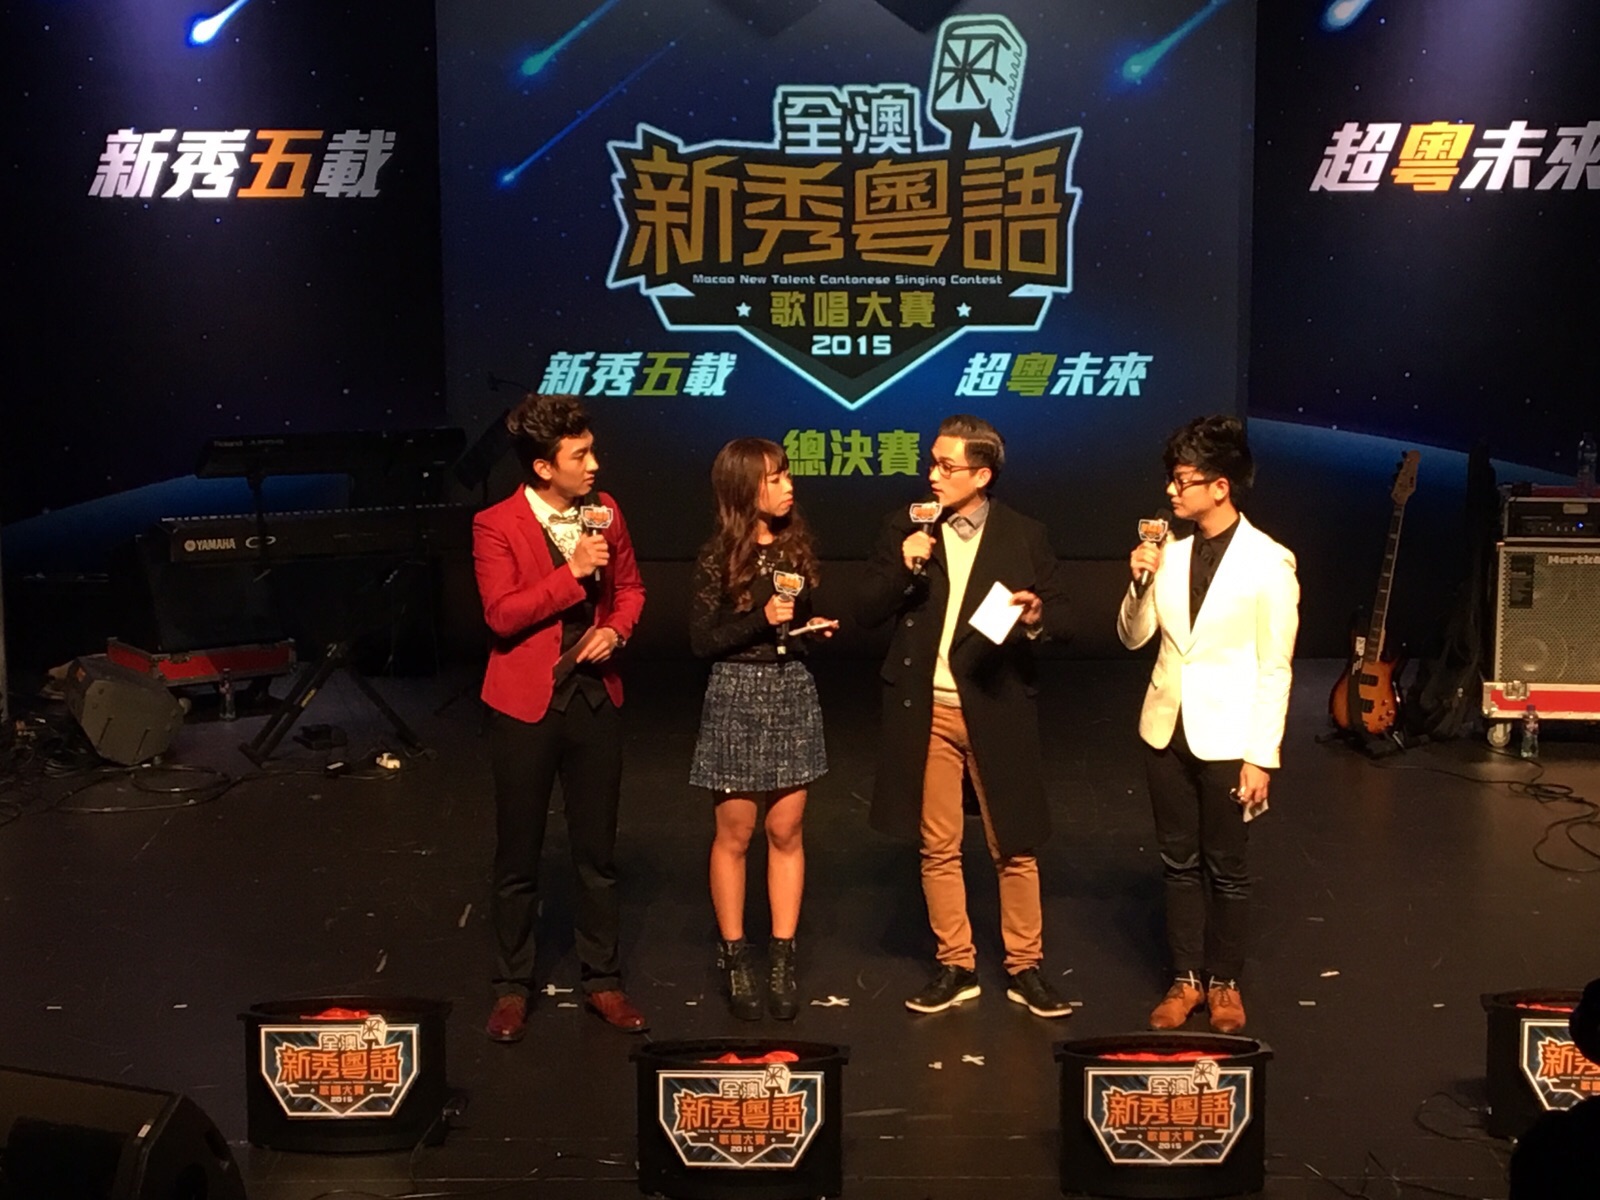 周啓陽 Elvis Chao之司儀主持紀錄: 全澳新秀粵語歌唱大賽2015總決賽